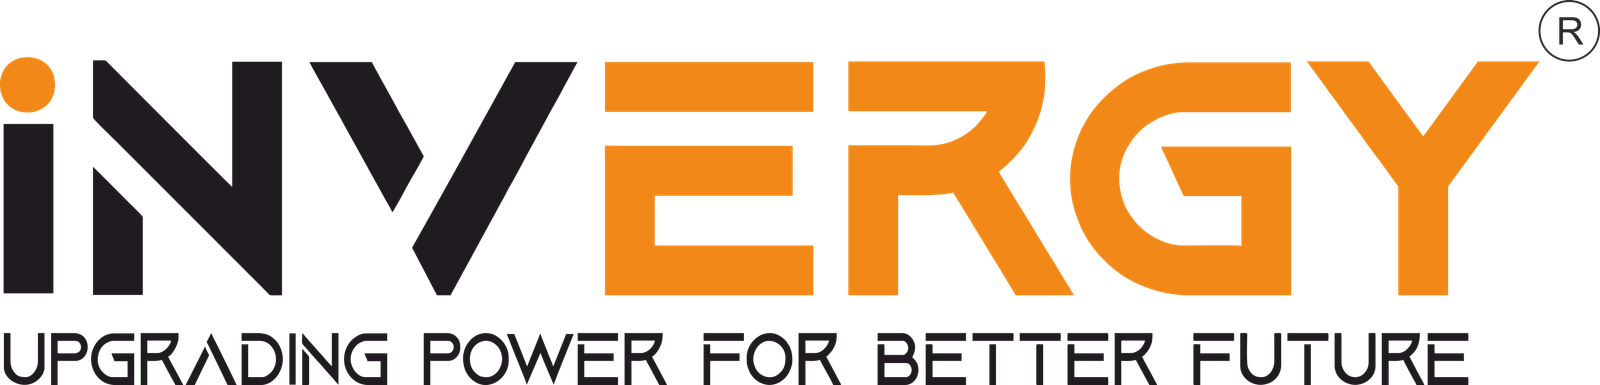 Invergy-Logo